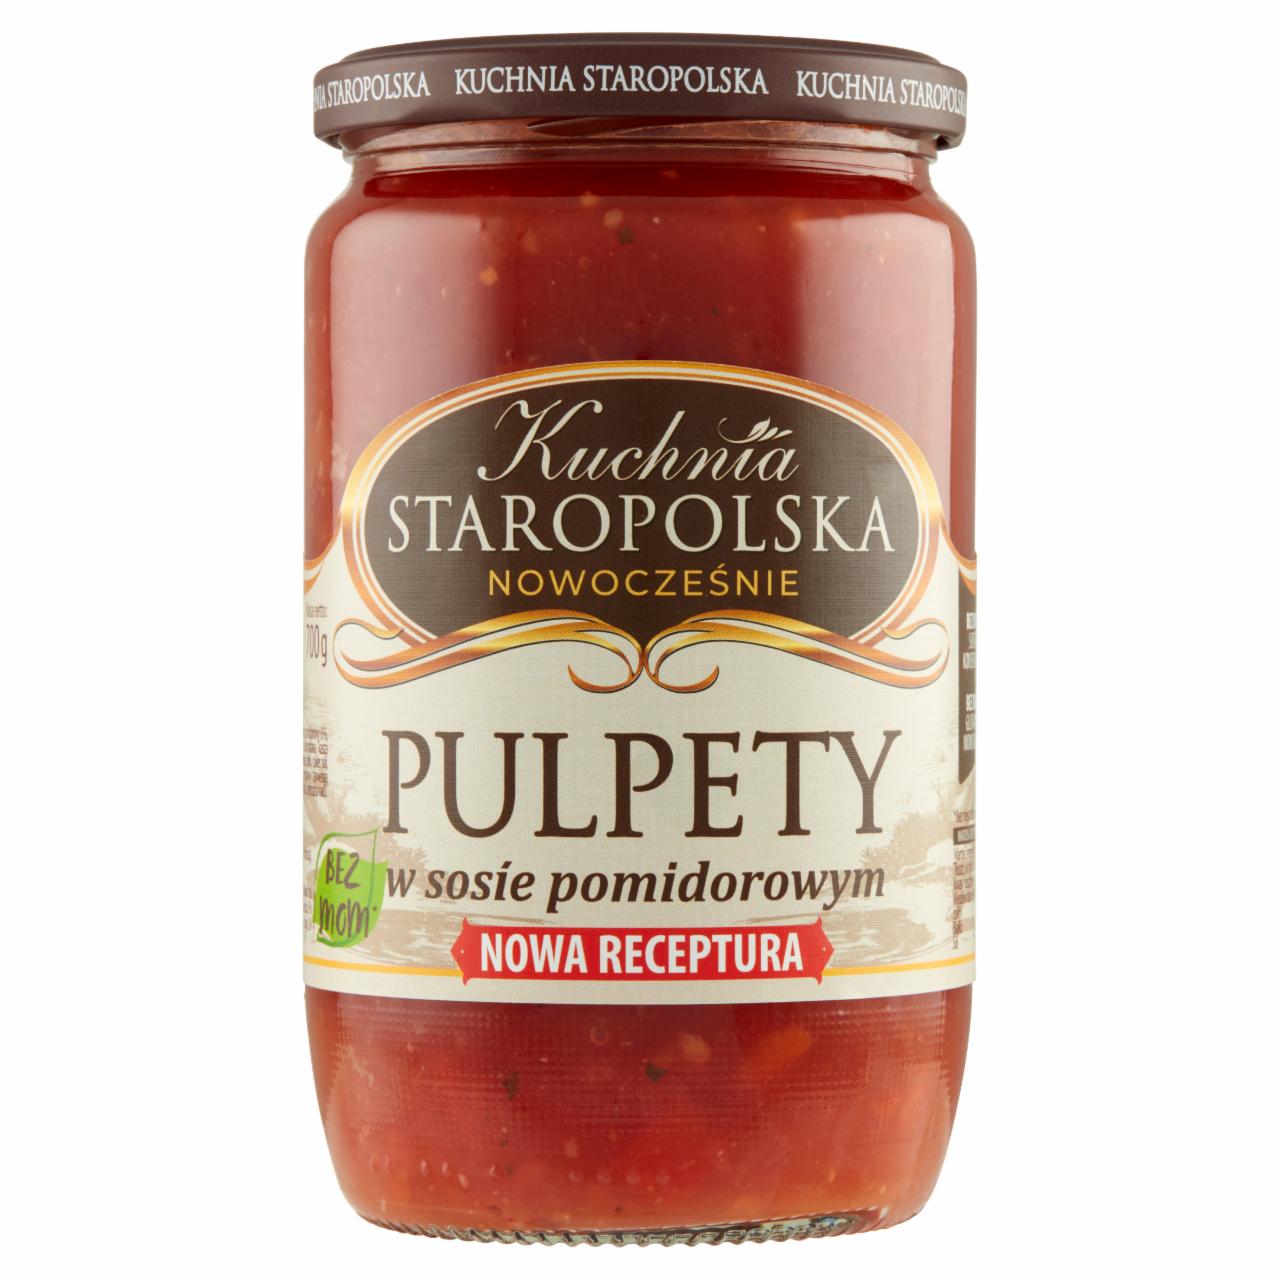 Zdjęcia - Kuchnia Staropolska Pulpety w sosie pomidorowym 700 g